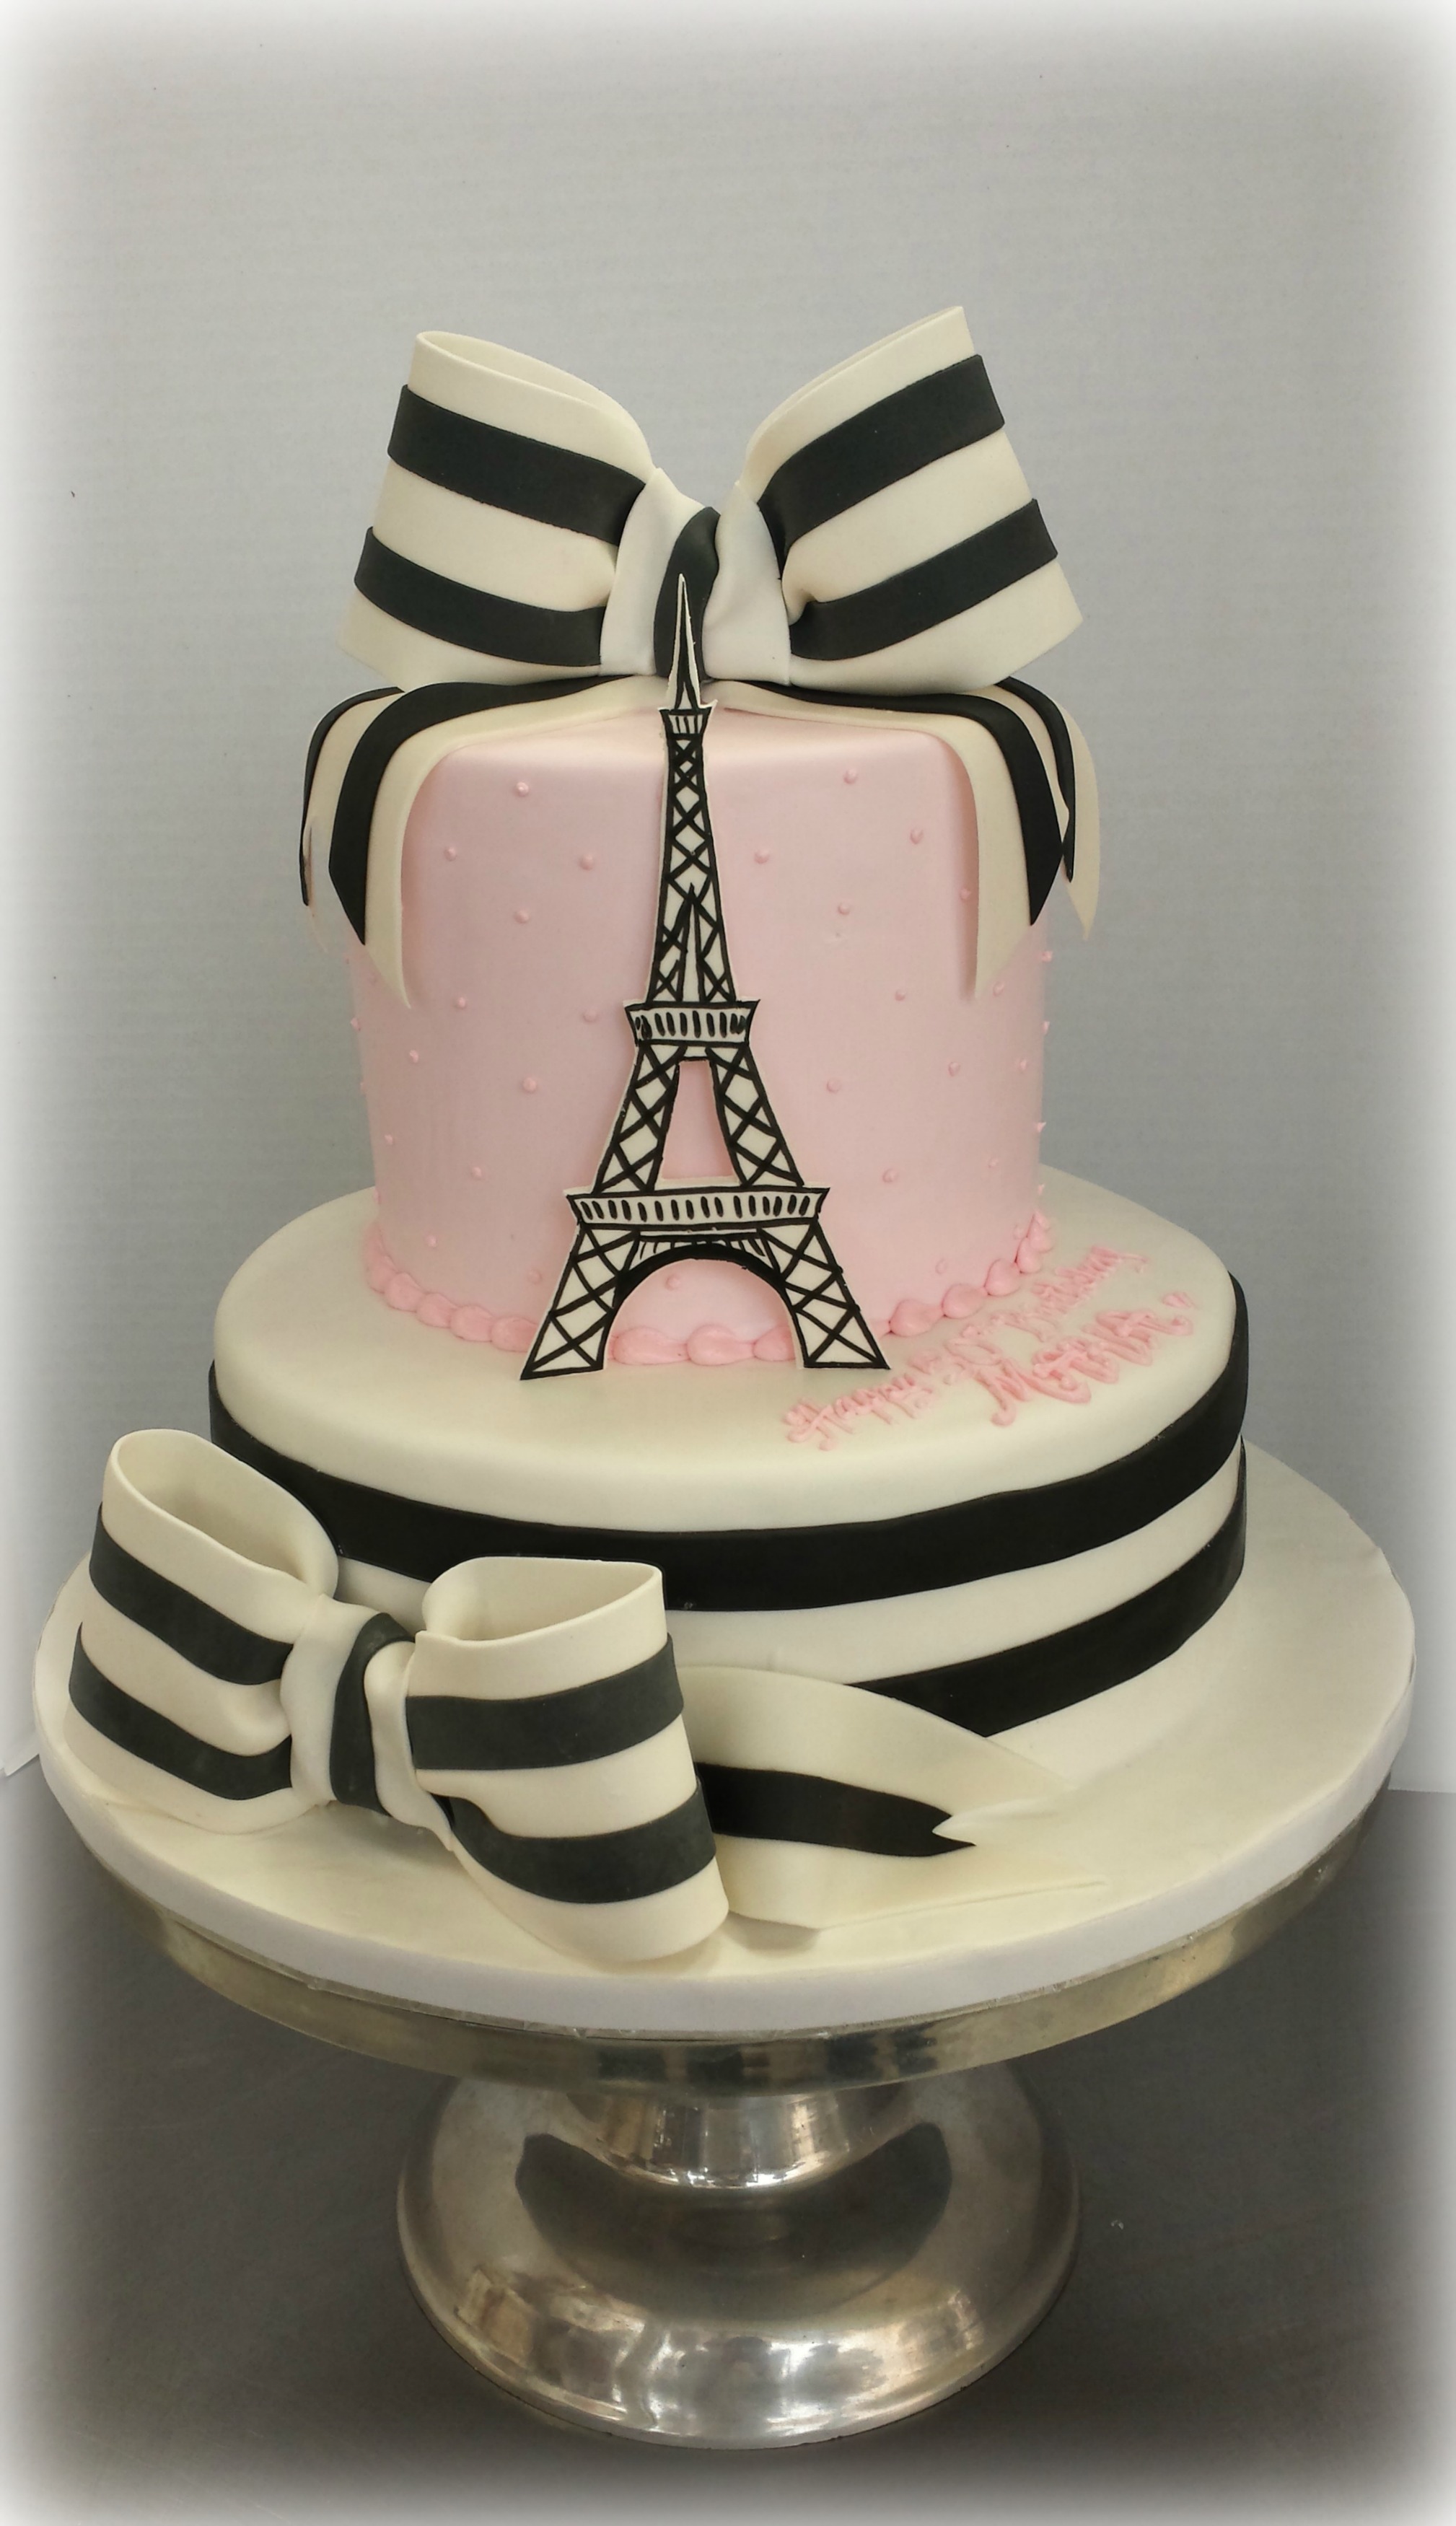 Paris Birthday Cake